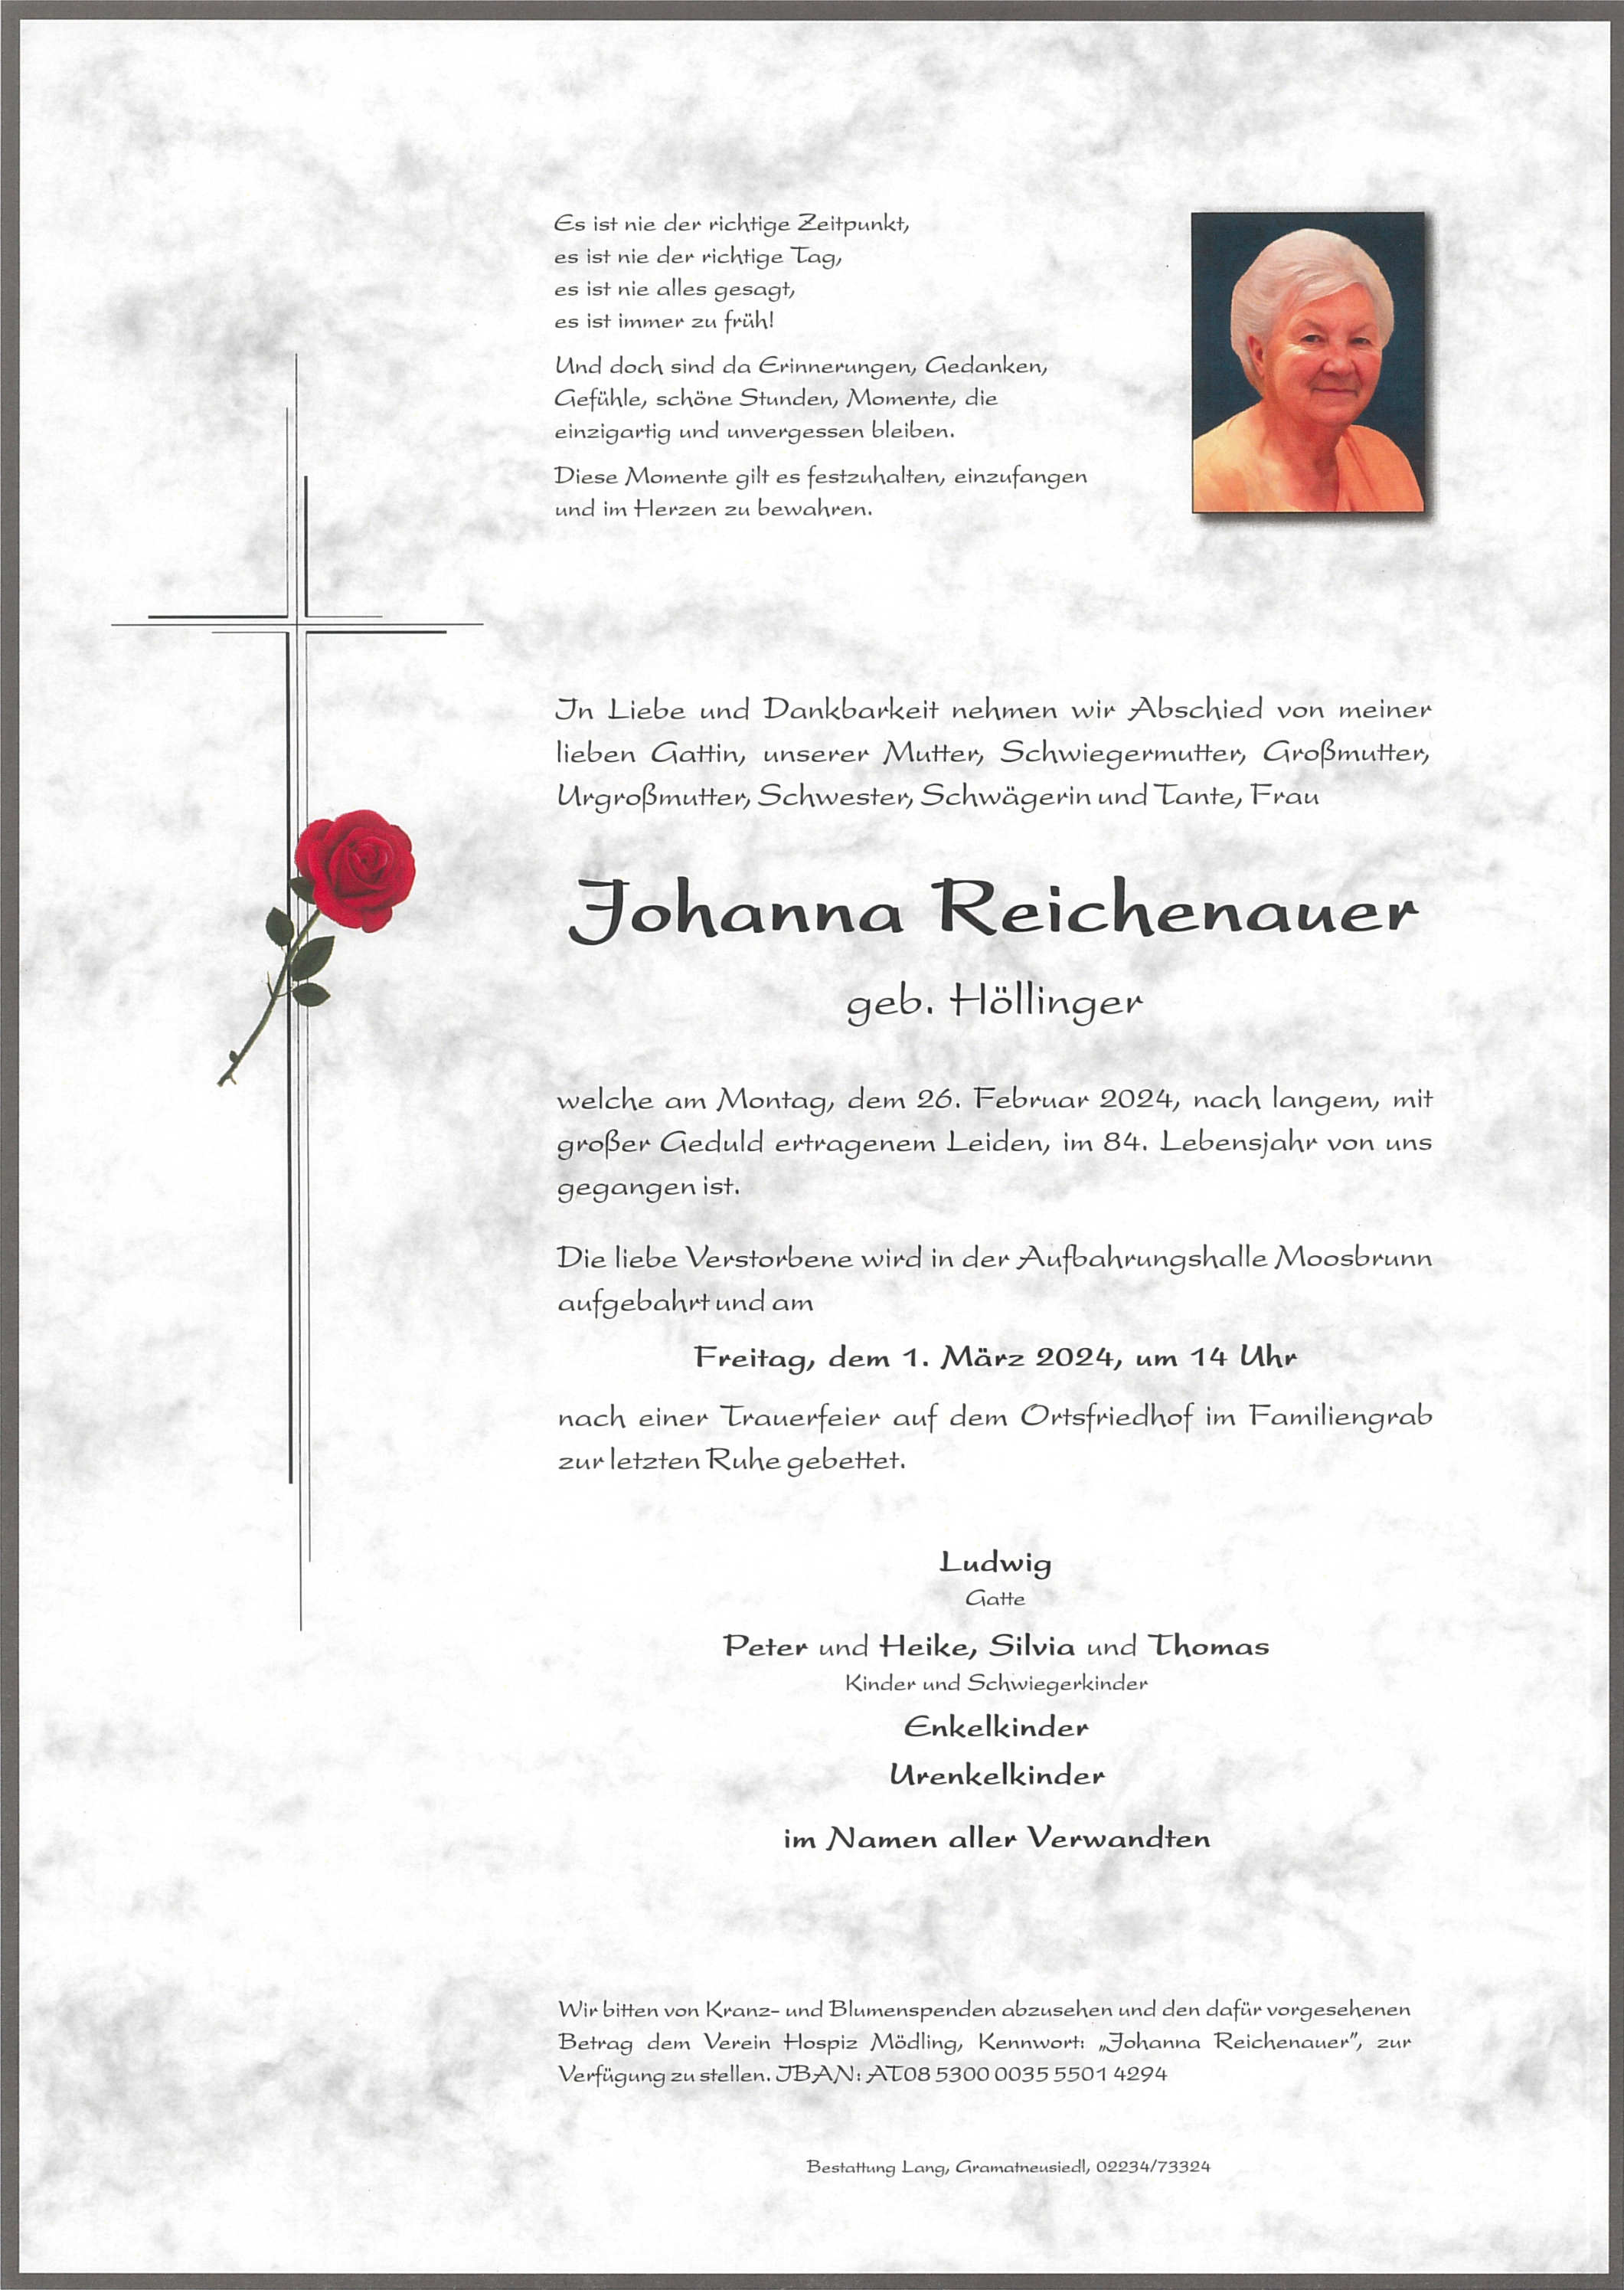 Johanna Reichenauer